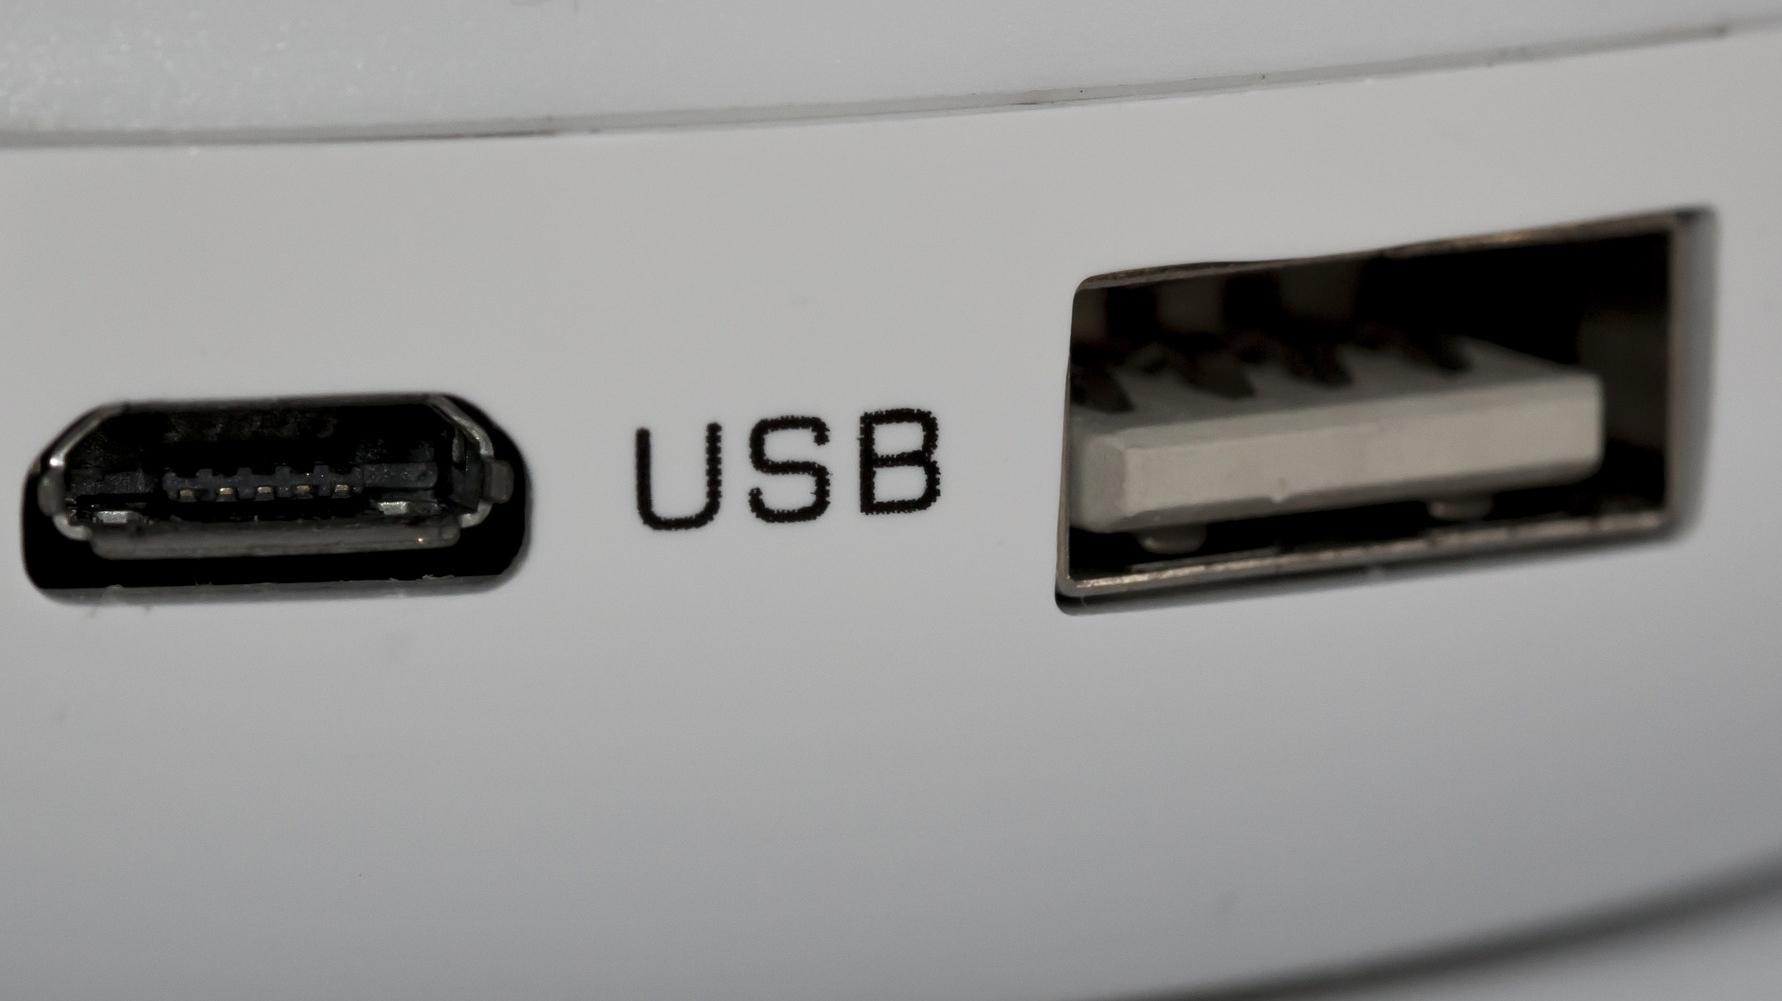 Testen Sie die Verbindung mit einem anderen USB-Kabel oder einem anderen USB-Anschluss am Computer.
Überprüfen Sie, ob die LaCie externe Festplatte ordnungsgemäß mit Strom versorgt wird.